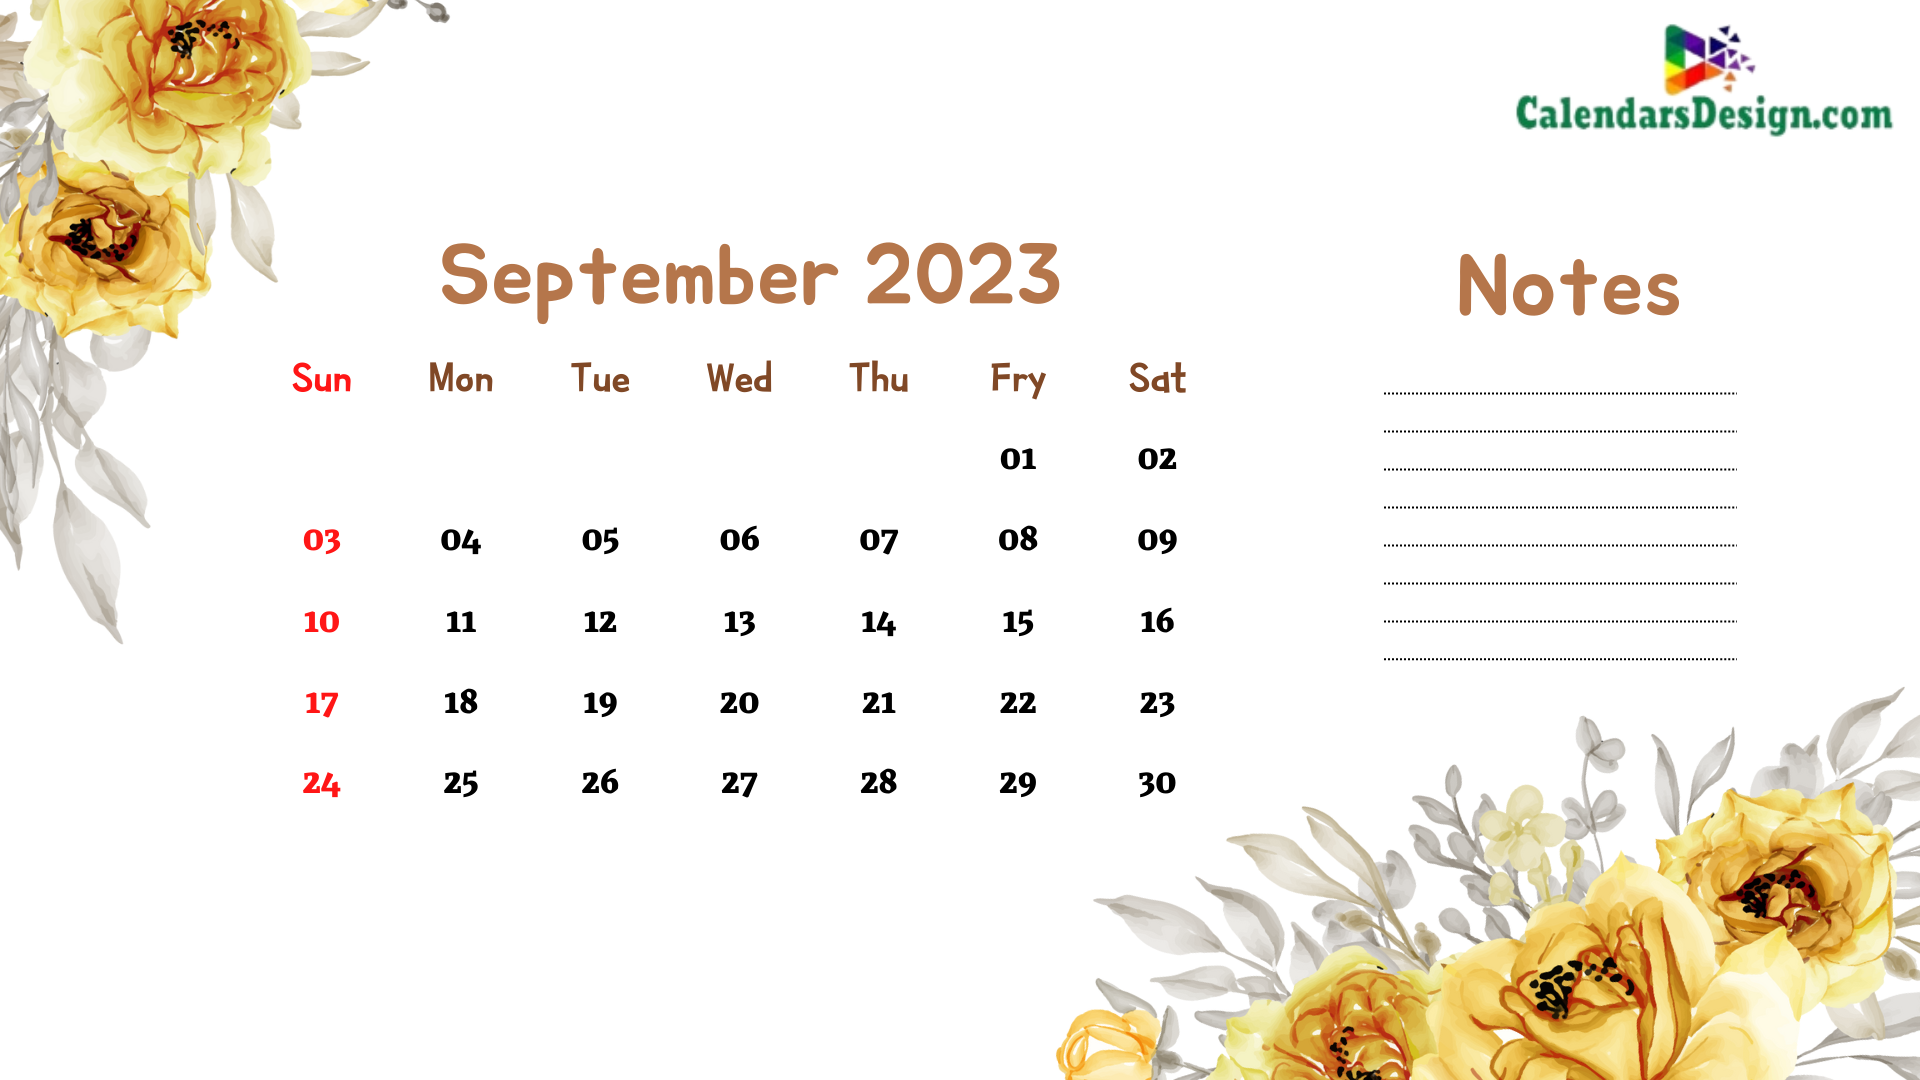 September 2023 Wall Calendar For Office